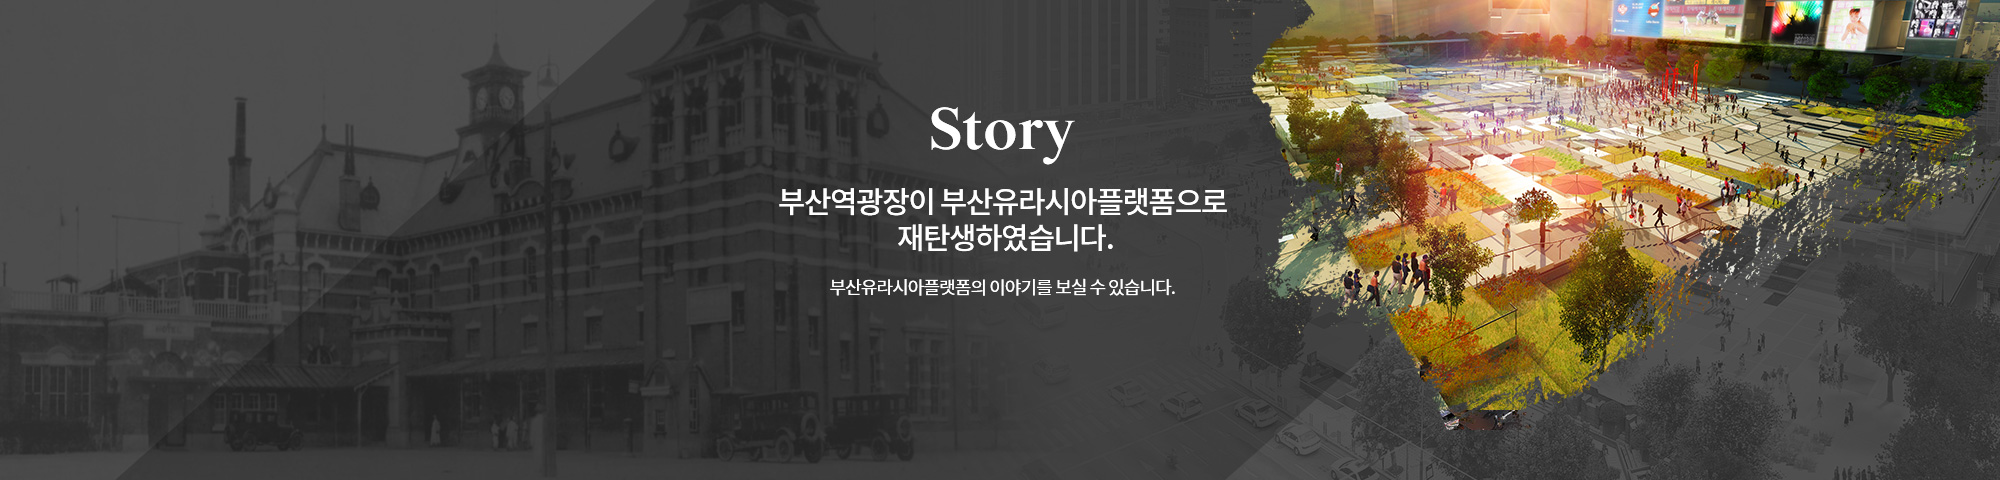 부산역광장이 부산유라시아플랫폼으로  재탄생하였습니다. 부산유라시아플랫폼의 이야기를 보실 수 있습니다.